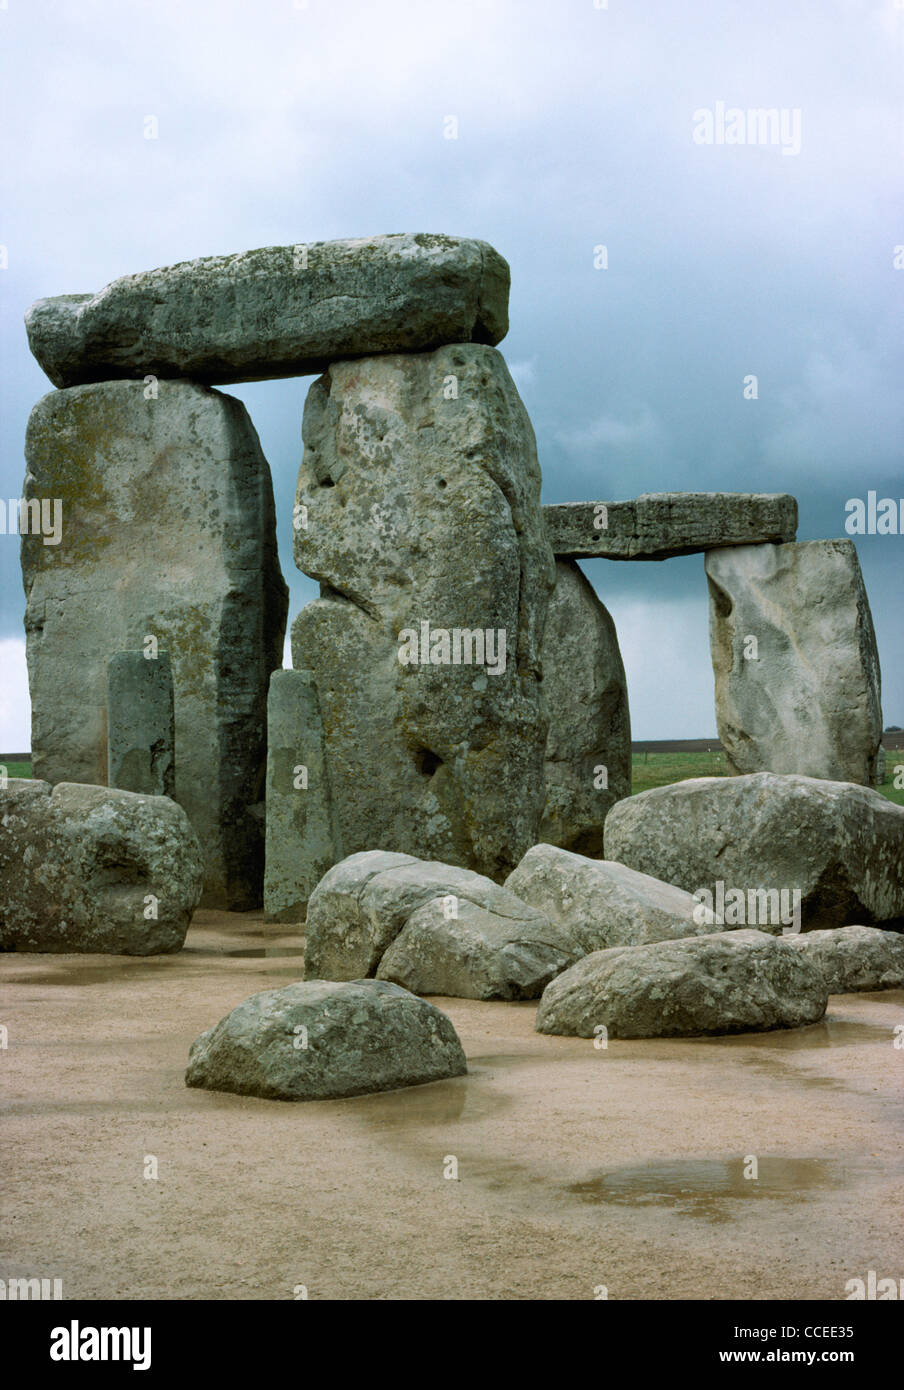 Stonehenge Stone Circle, Salisbury Plain, Wiltshire, England, UK Stock Photo